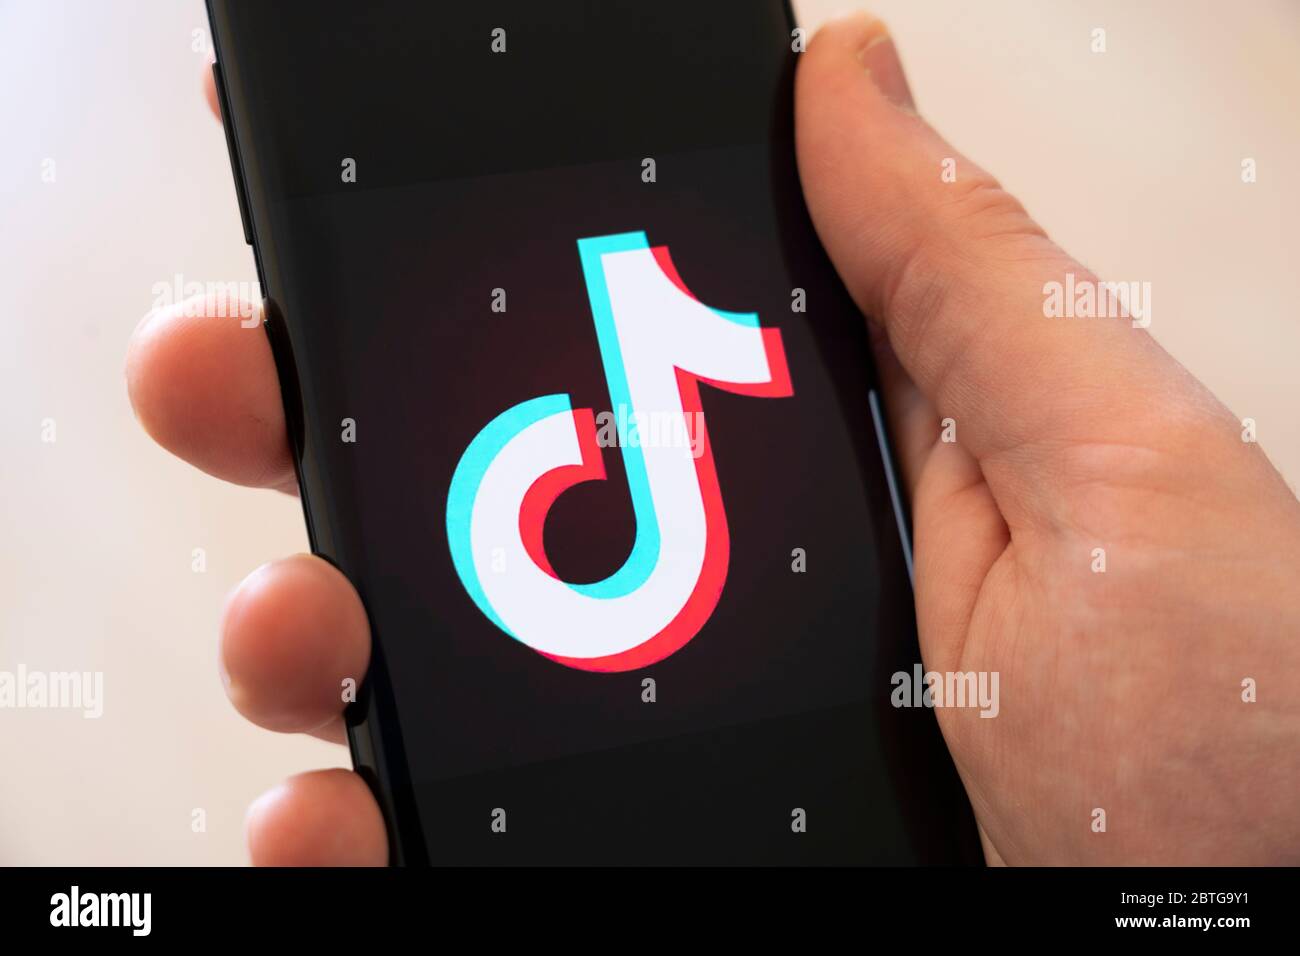 Main d'un homme tenant un smartphone affichant un grand logo pour l'application chinoise de partage de vidéos sur les réseaux sociaux Tik Tok Banque D'Images